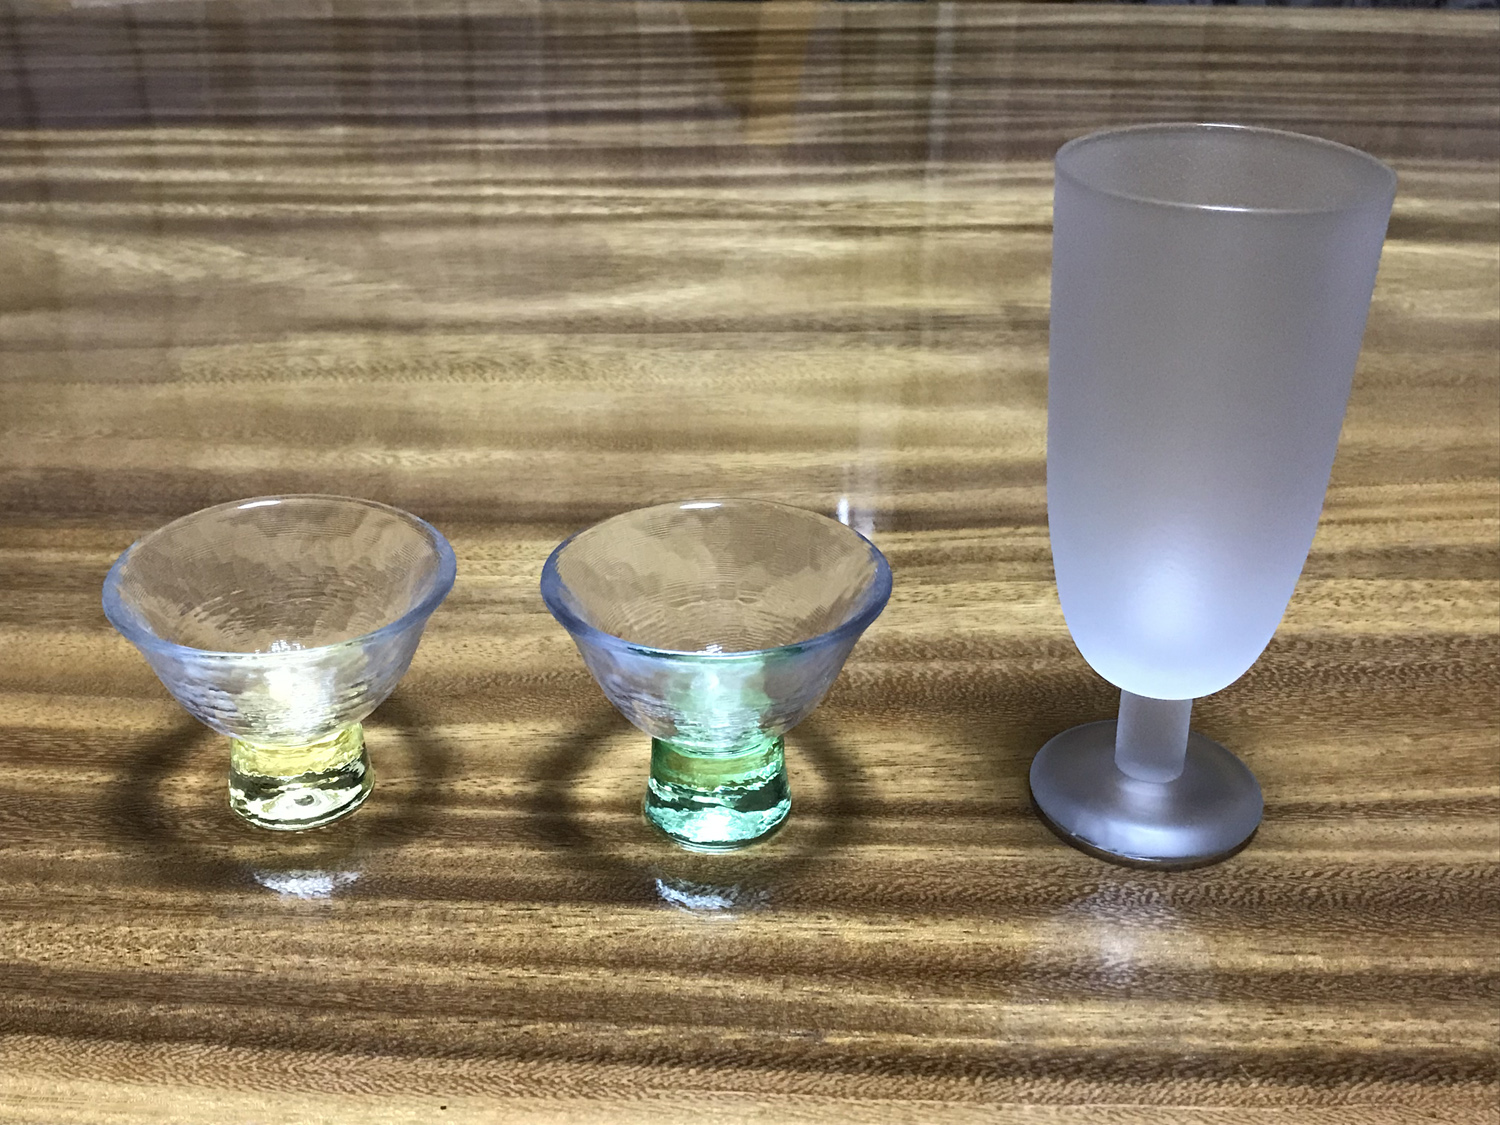 並べられたガラス製の杯の写真